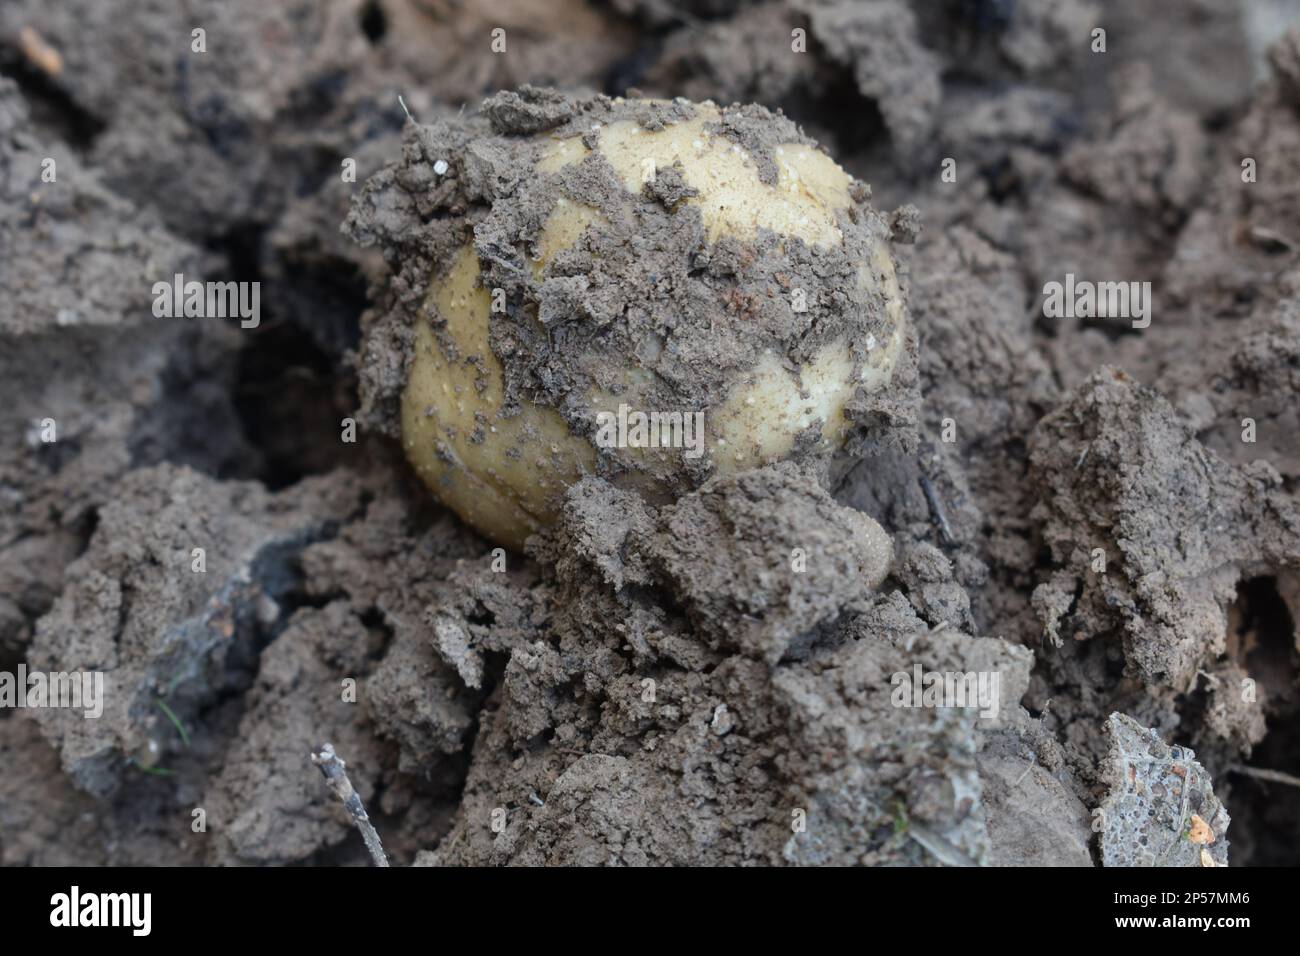 Pommes de terre Russet cultivées dans un jardin à la maison, fraîchement creusées du sol, encore couvertes de terre. Rural Missouri, Mo, États-Unis, États-Unis, États-Unis Banque D'Images